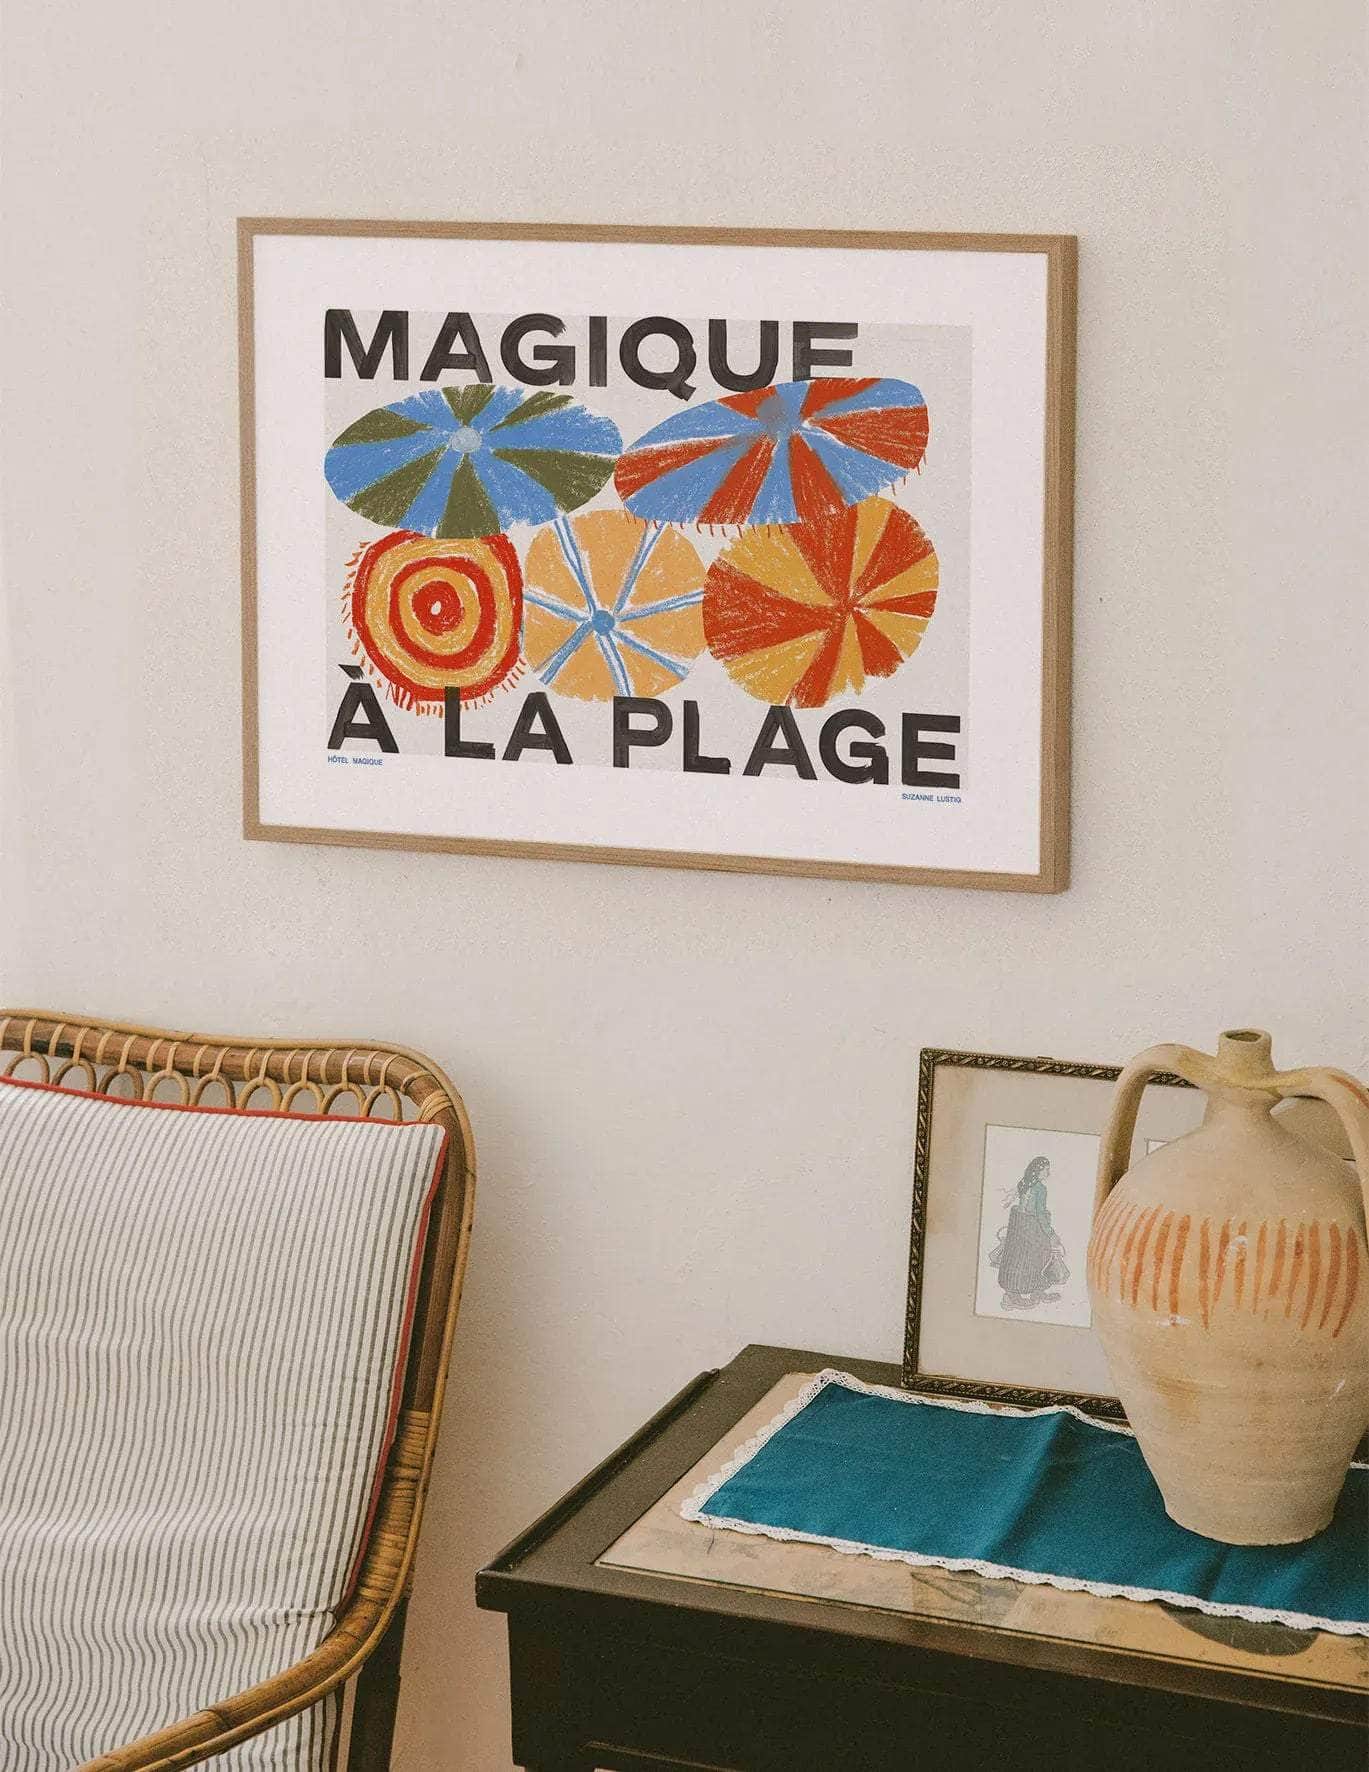 Magique à la Plage Art Print by Suzanne Lustig